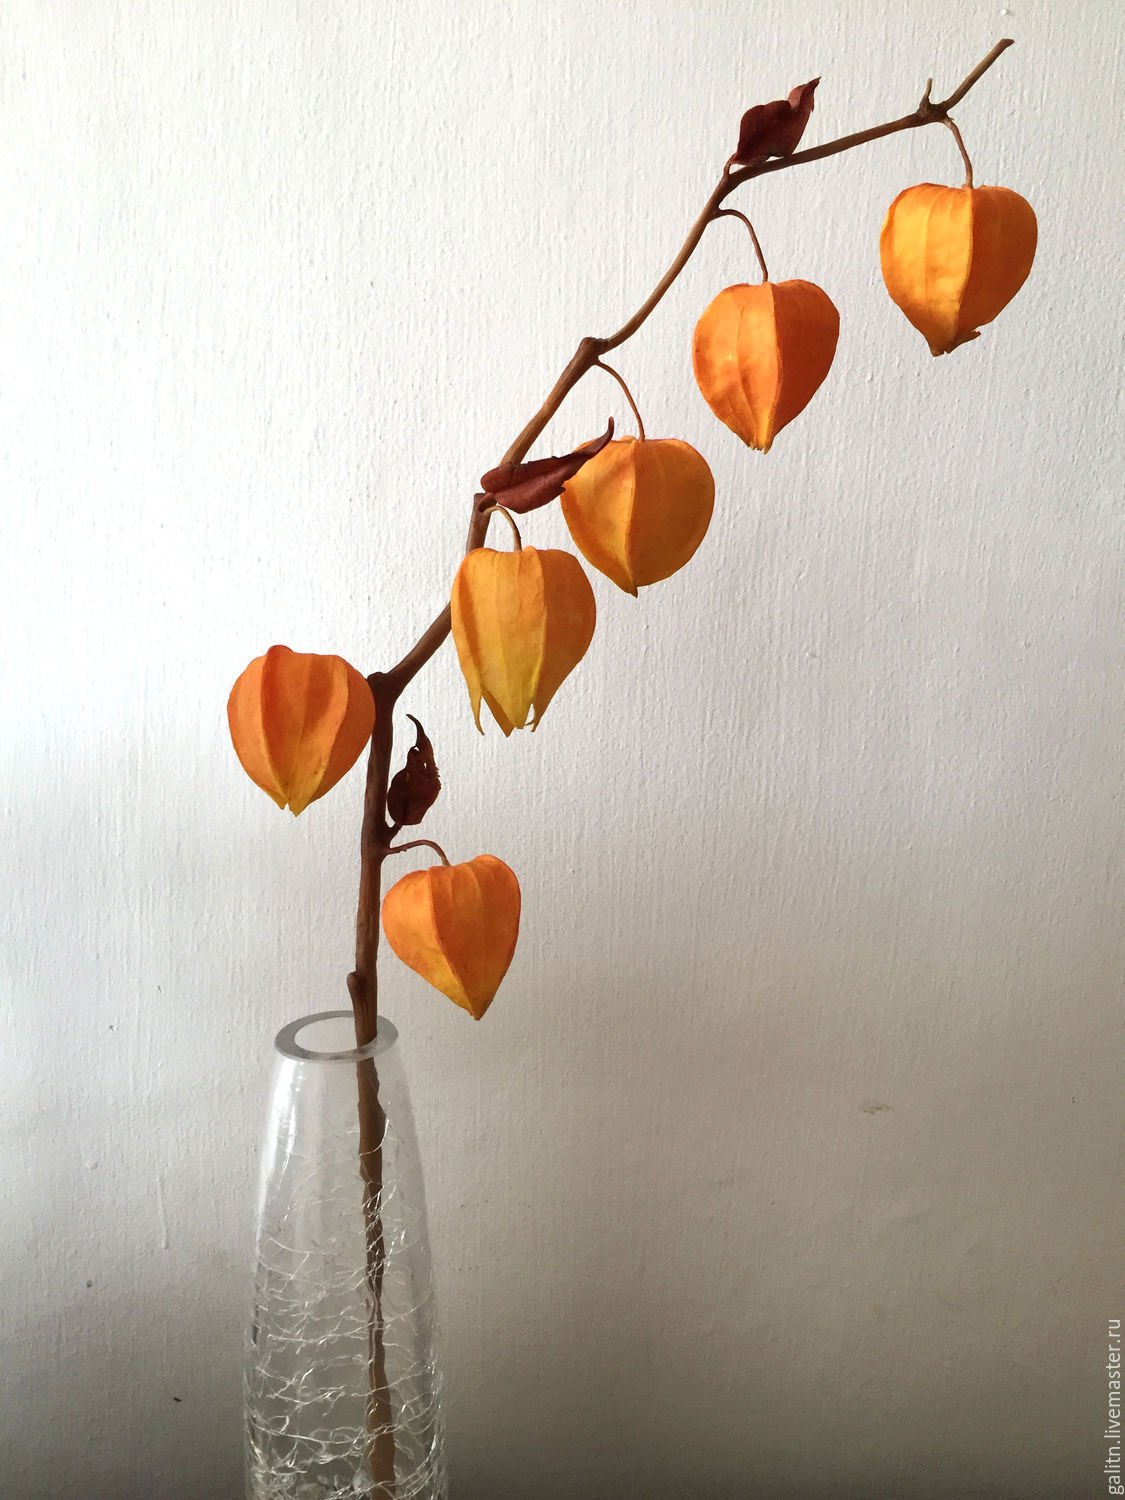 Растение с оранжевыми цветами фонариками